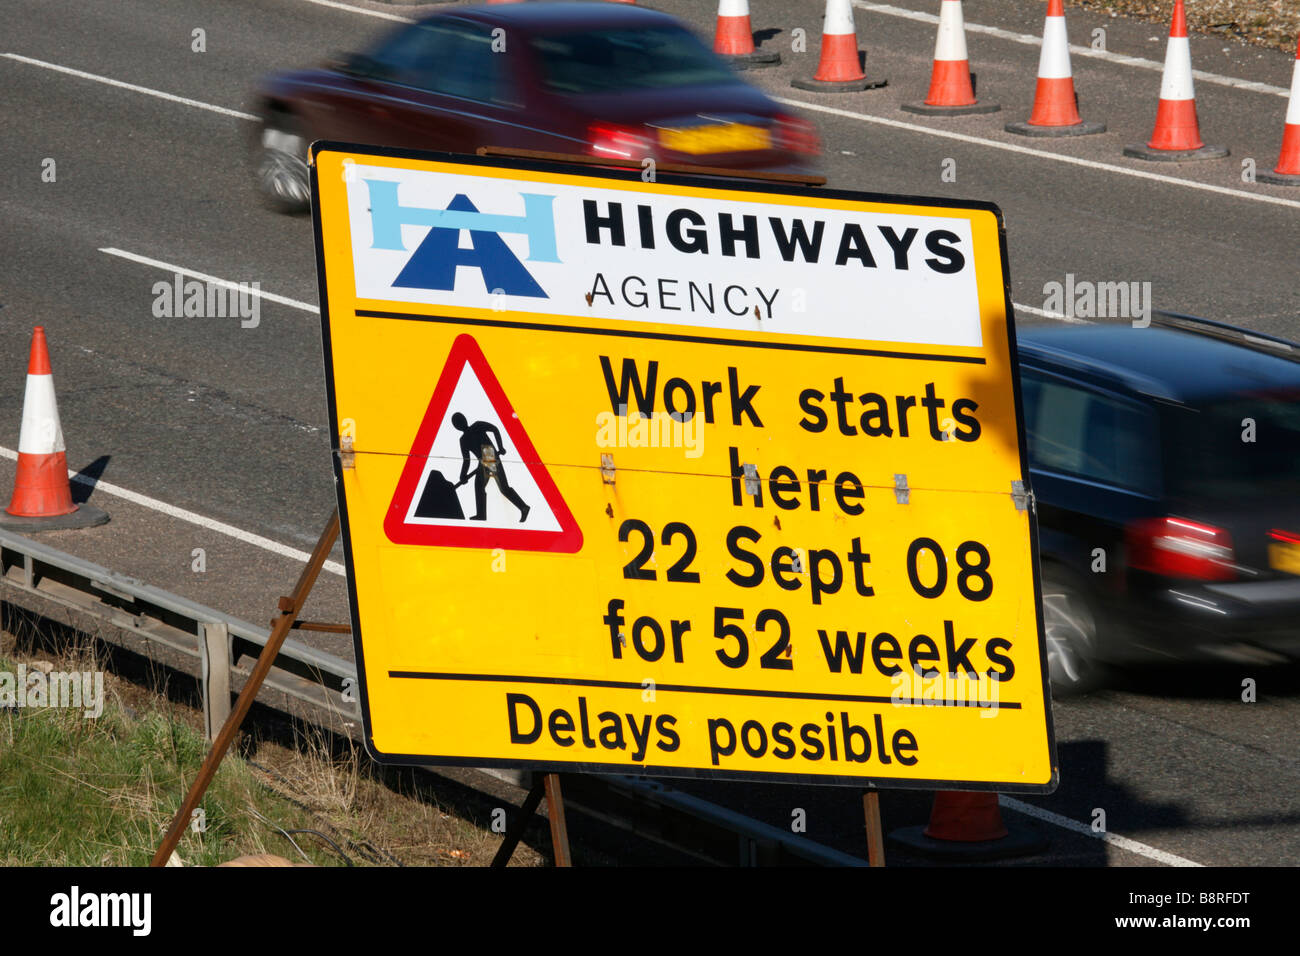 Highways Agency Avis de travaux routiers autoroute britannique signe Banque D'Images